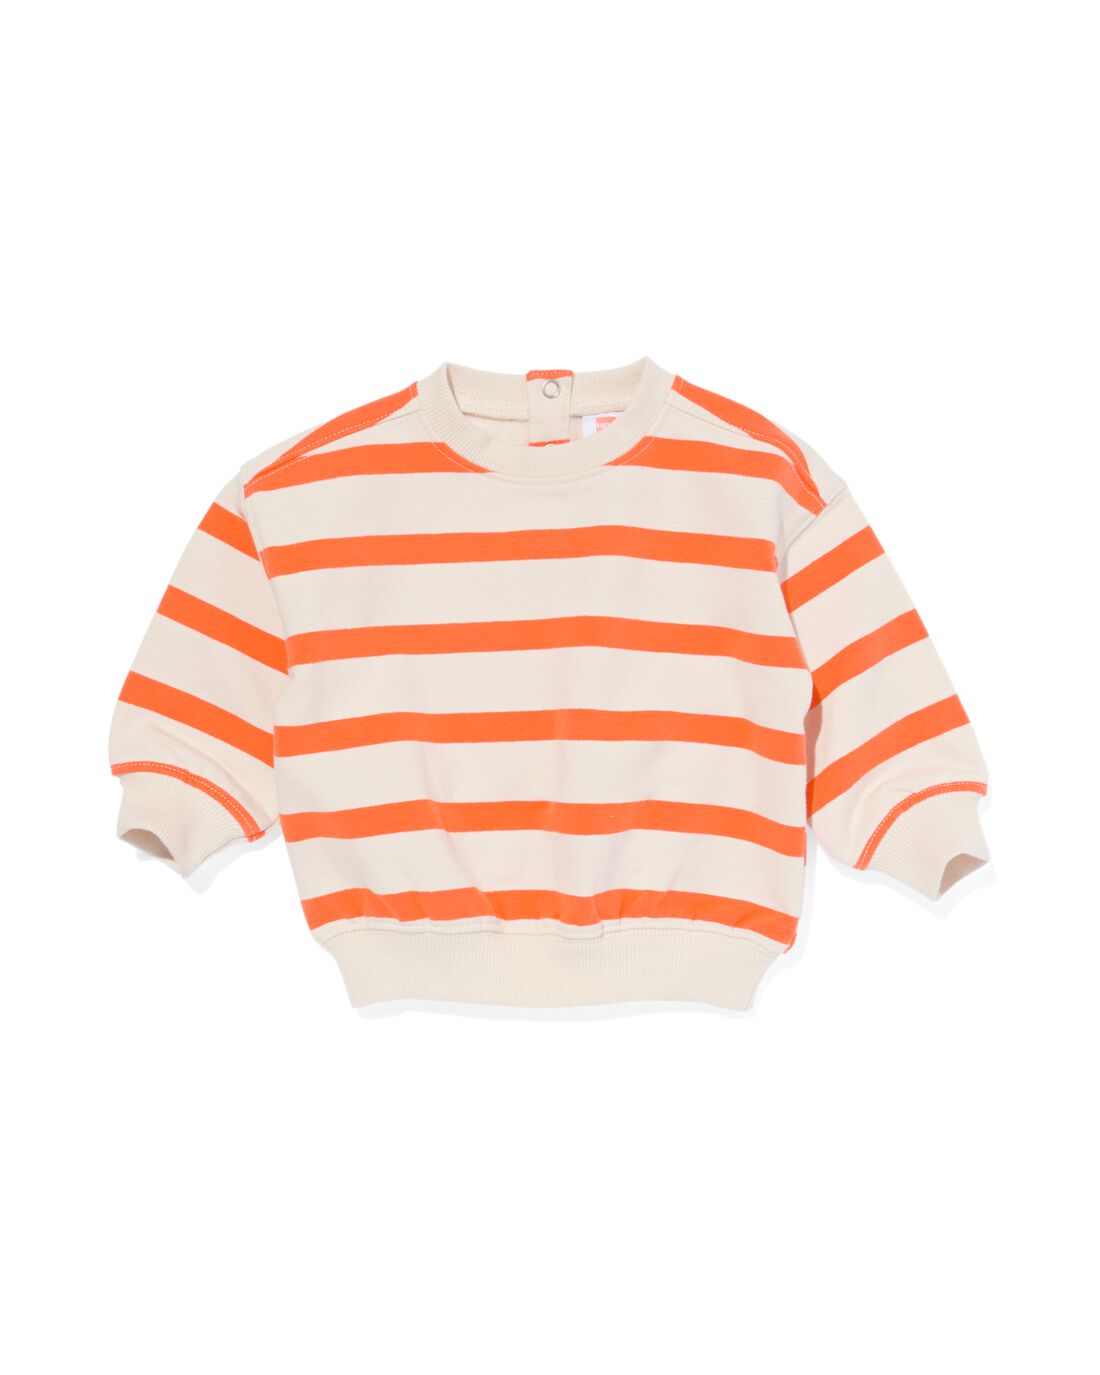 HEMA Baby Sweater Strepen Oranje (oranje)